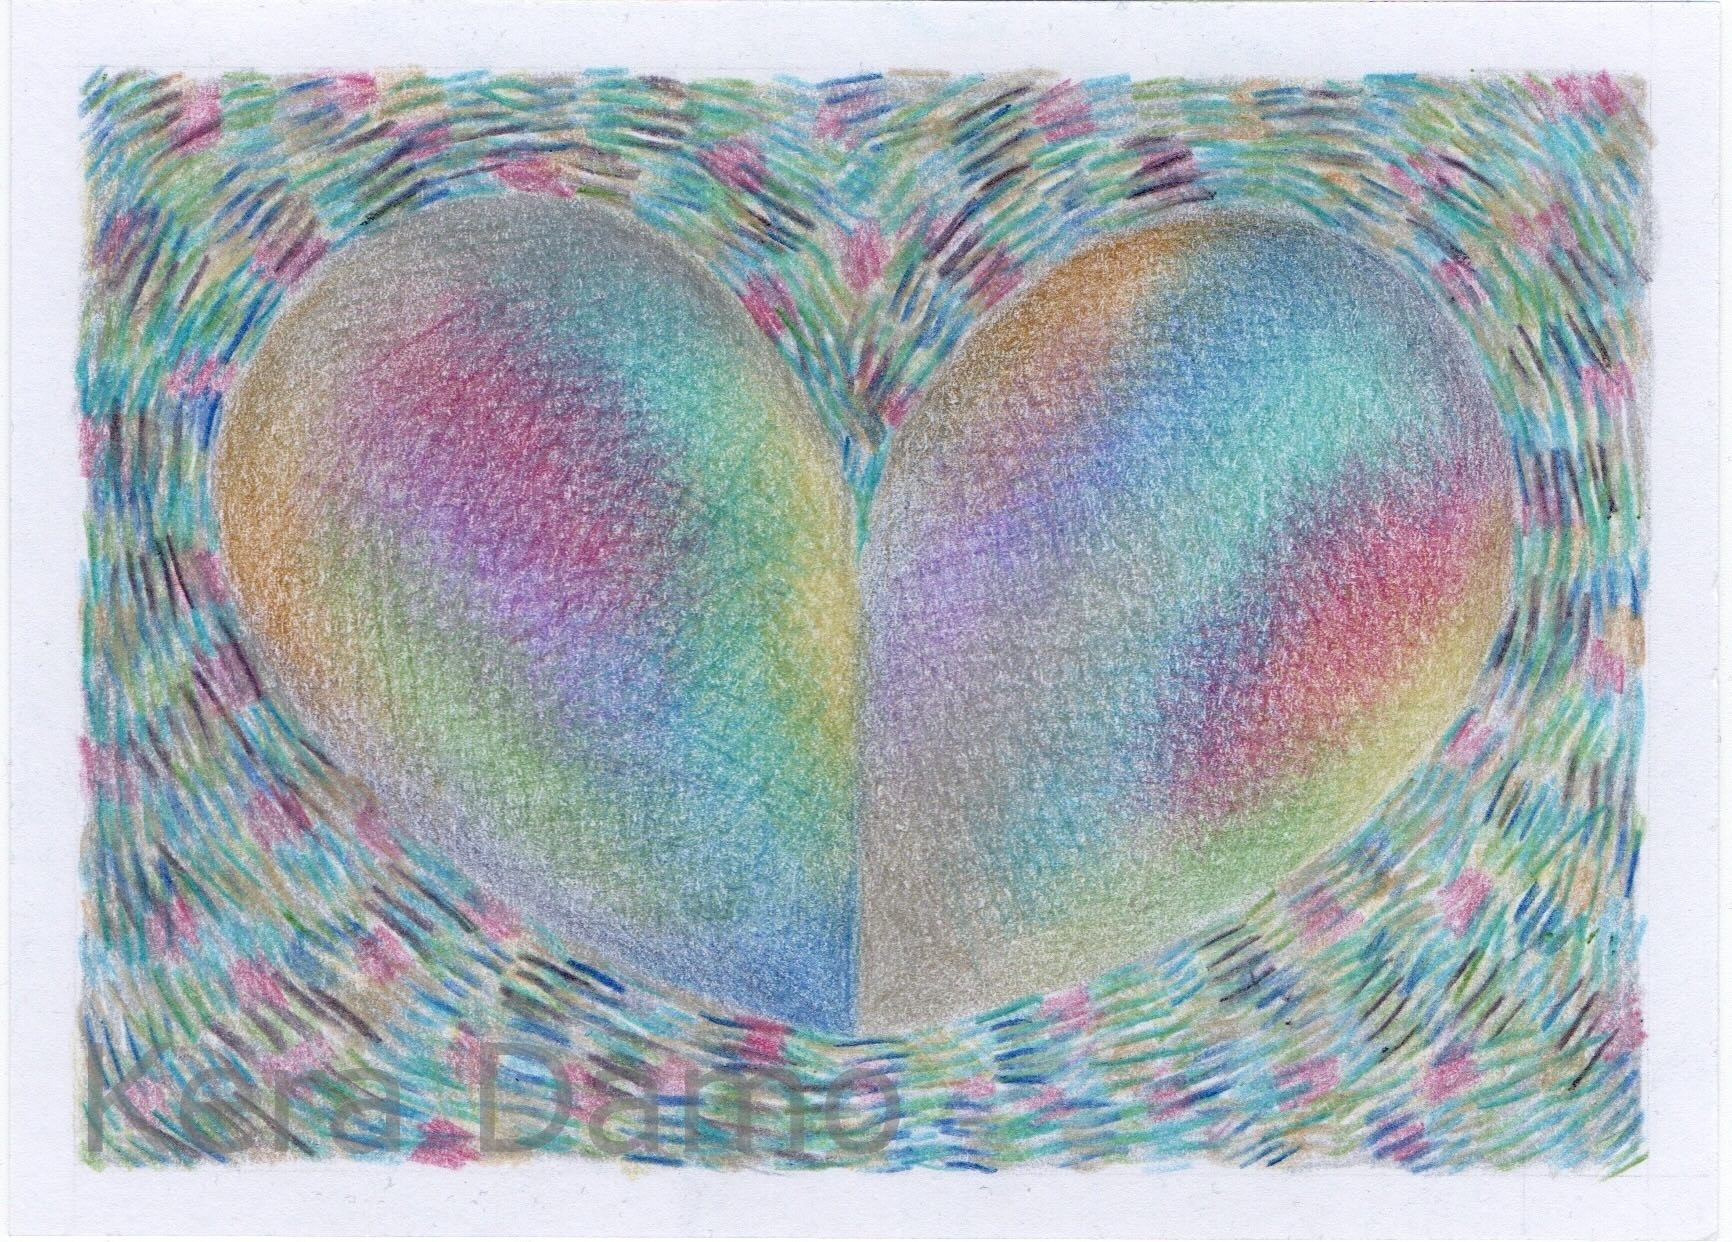 A coloured pencil drawing as part of the vibration series, made by visual artist Kera Damo from the Hague / Een gekleurde potloodtekening als onderdeel van de vibraties serie, gemaakt door beeldend kunstenaar Kera Damo uit Den Haag